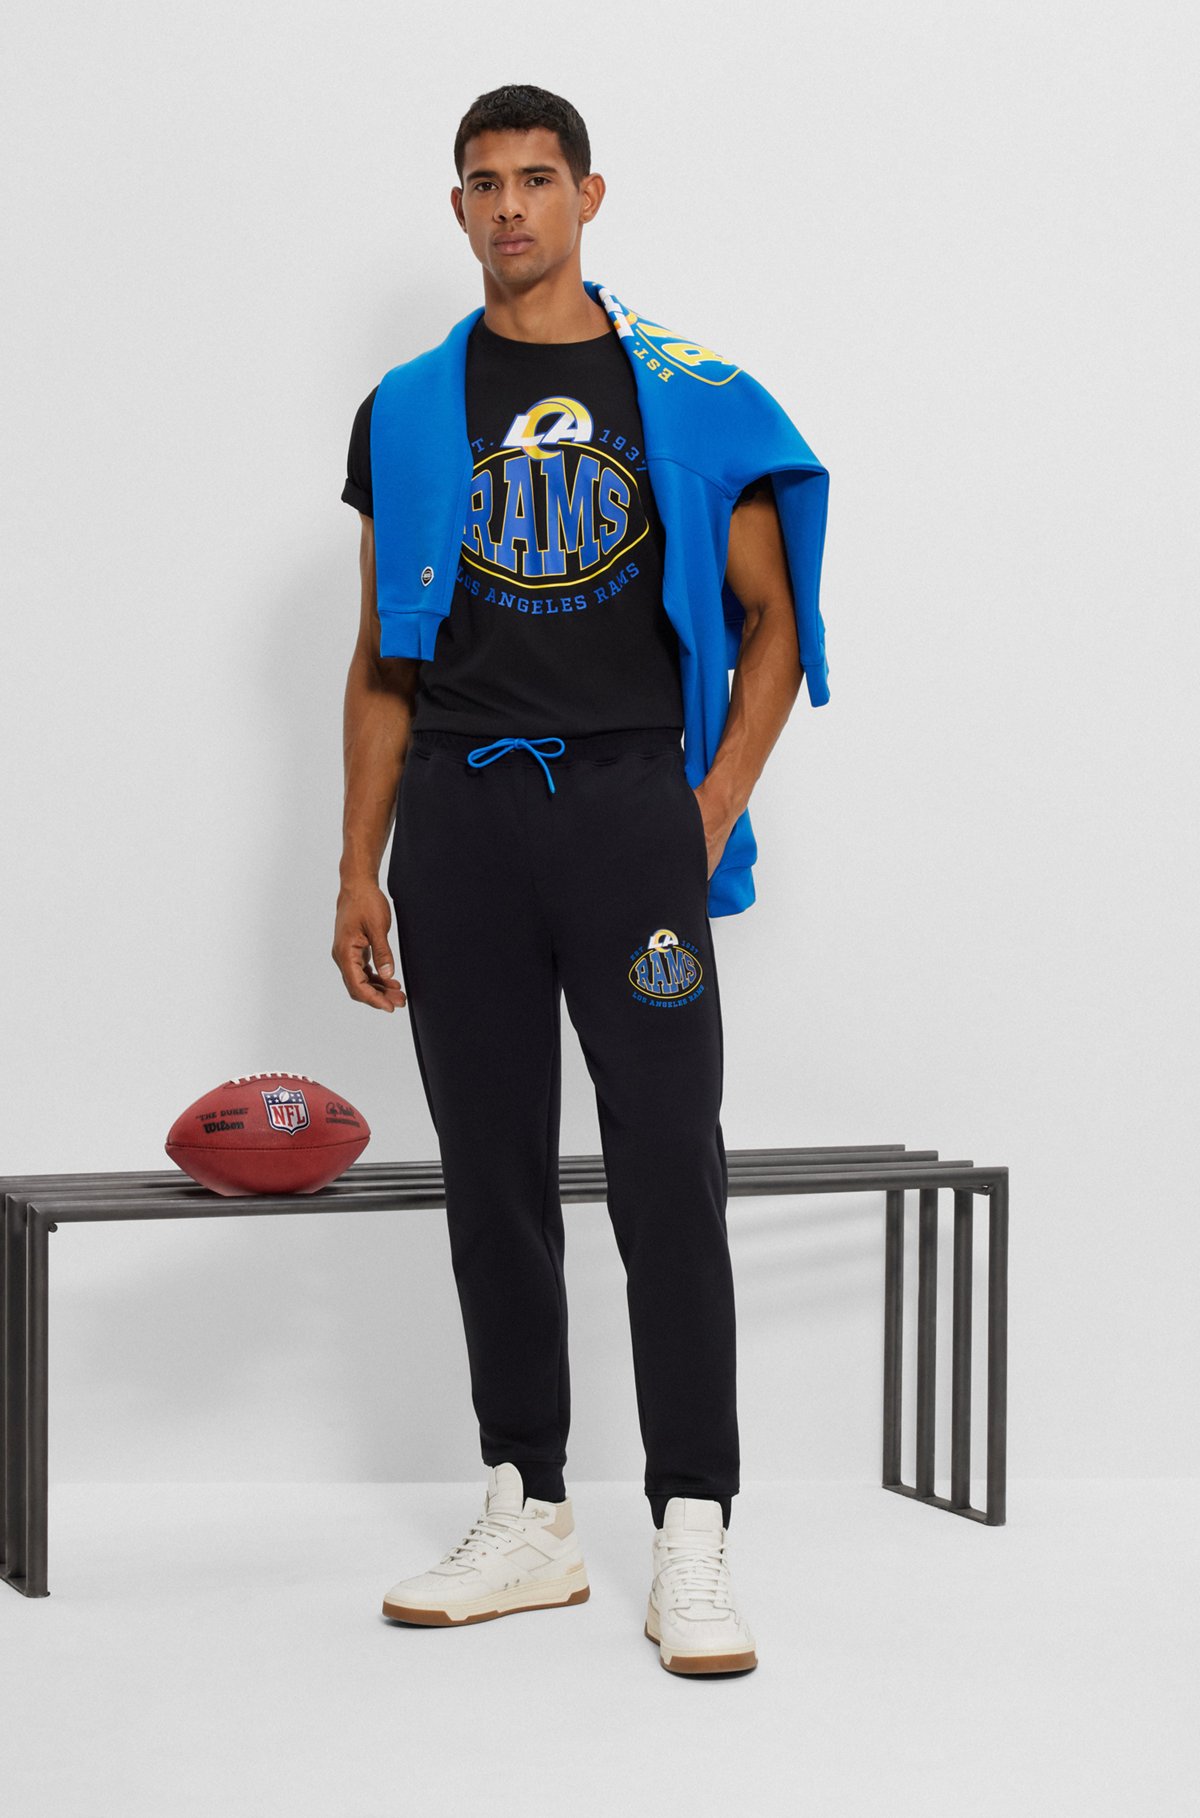 Pantalones de chándal BOSS x NFL de mezcla de algodón con detalle de la colaboración, Rams